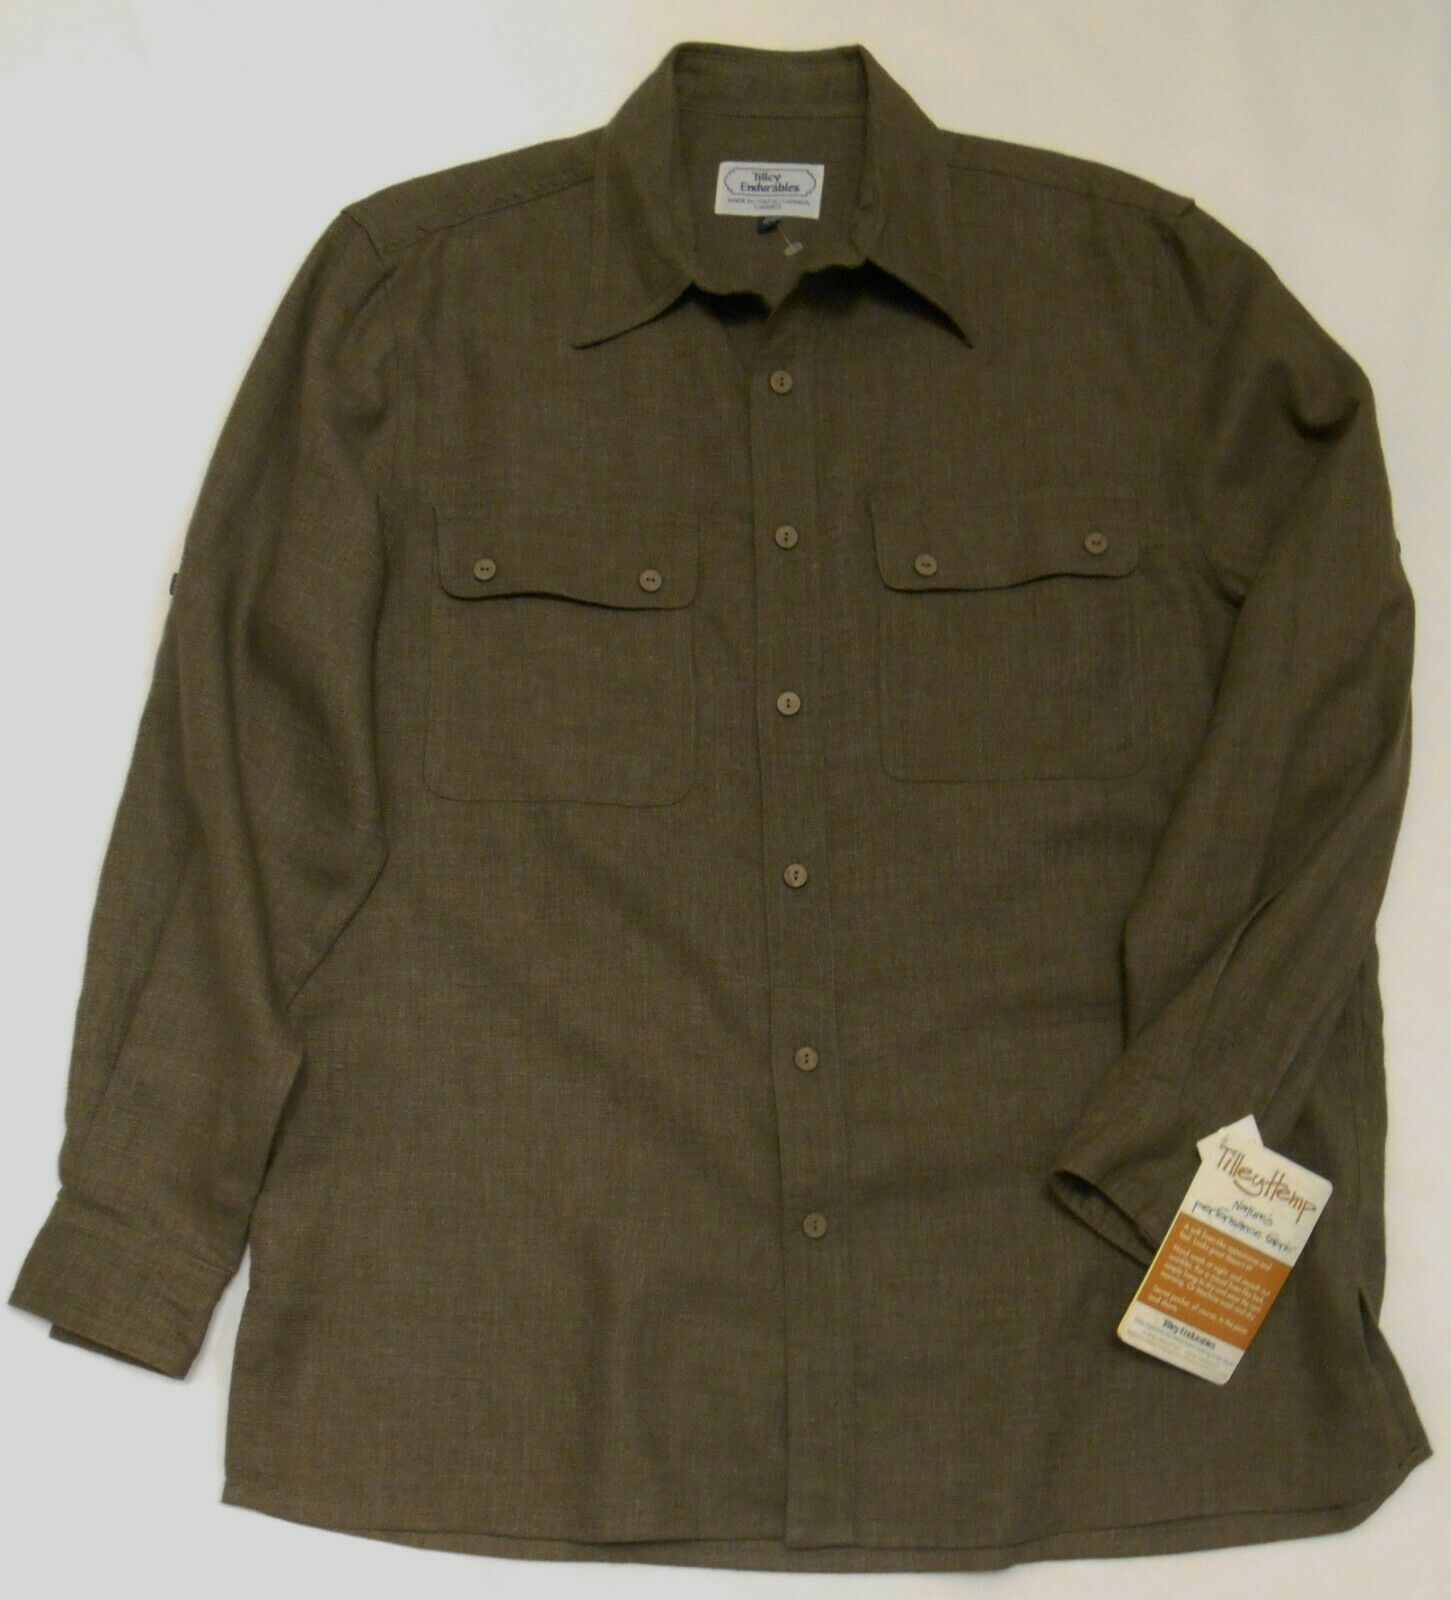 TILLEY ENDURABLES Men's SHIRT Brown Long & Adjustable Sleeve HEMP Blend M NWT - $89.95